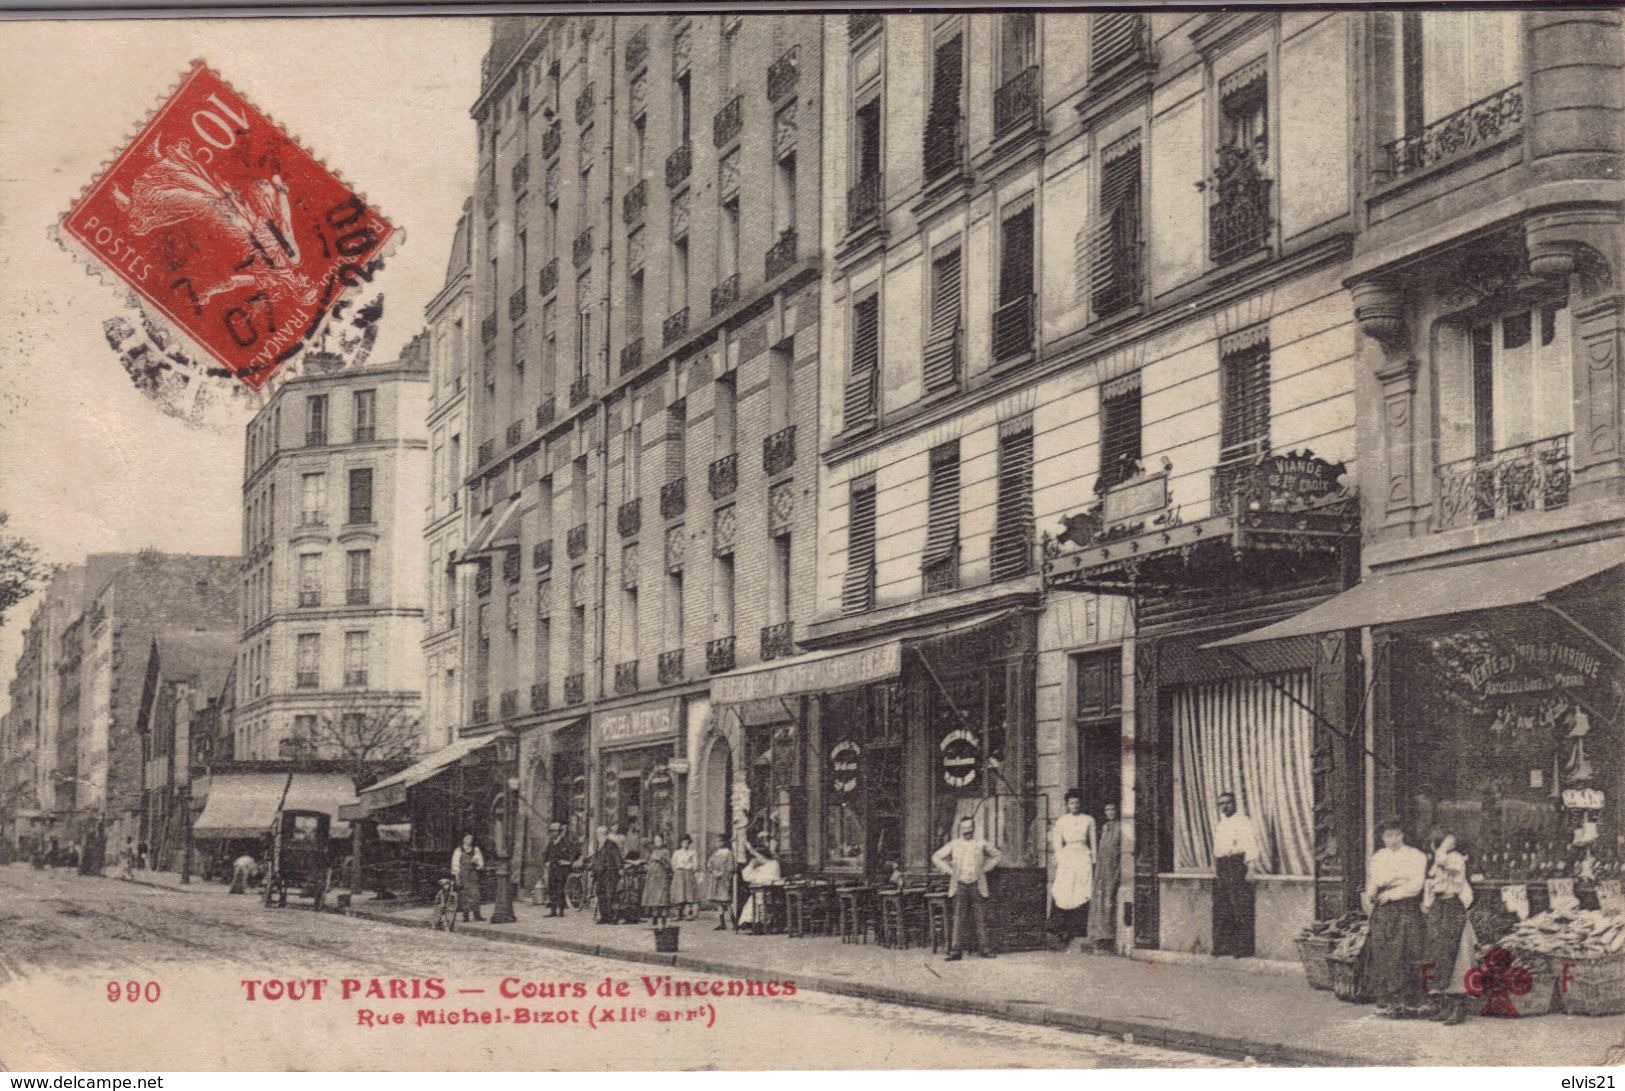 TOUT PARIS 12 ème Cours De Vincennes.Rue Michel Bizot - Arrondissement: 12